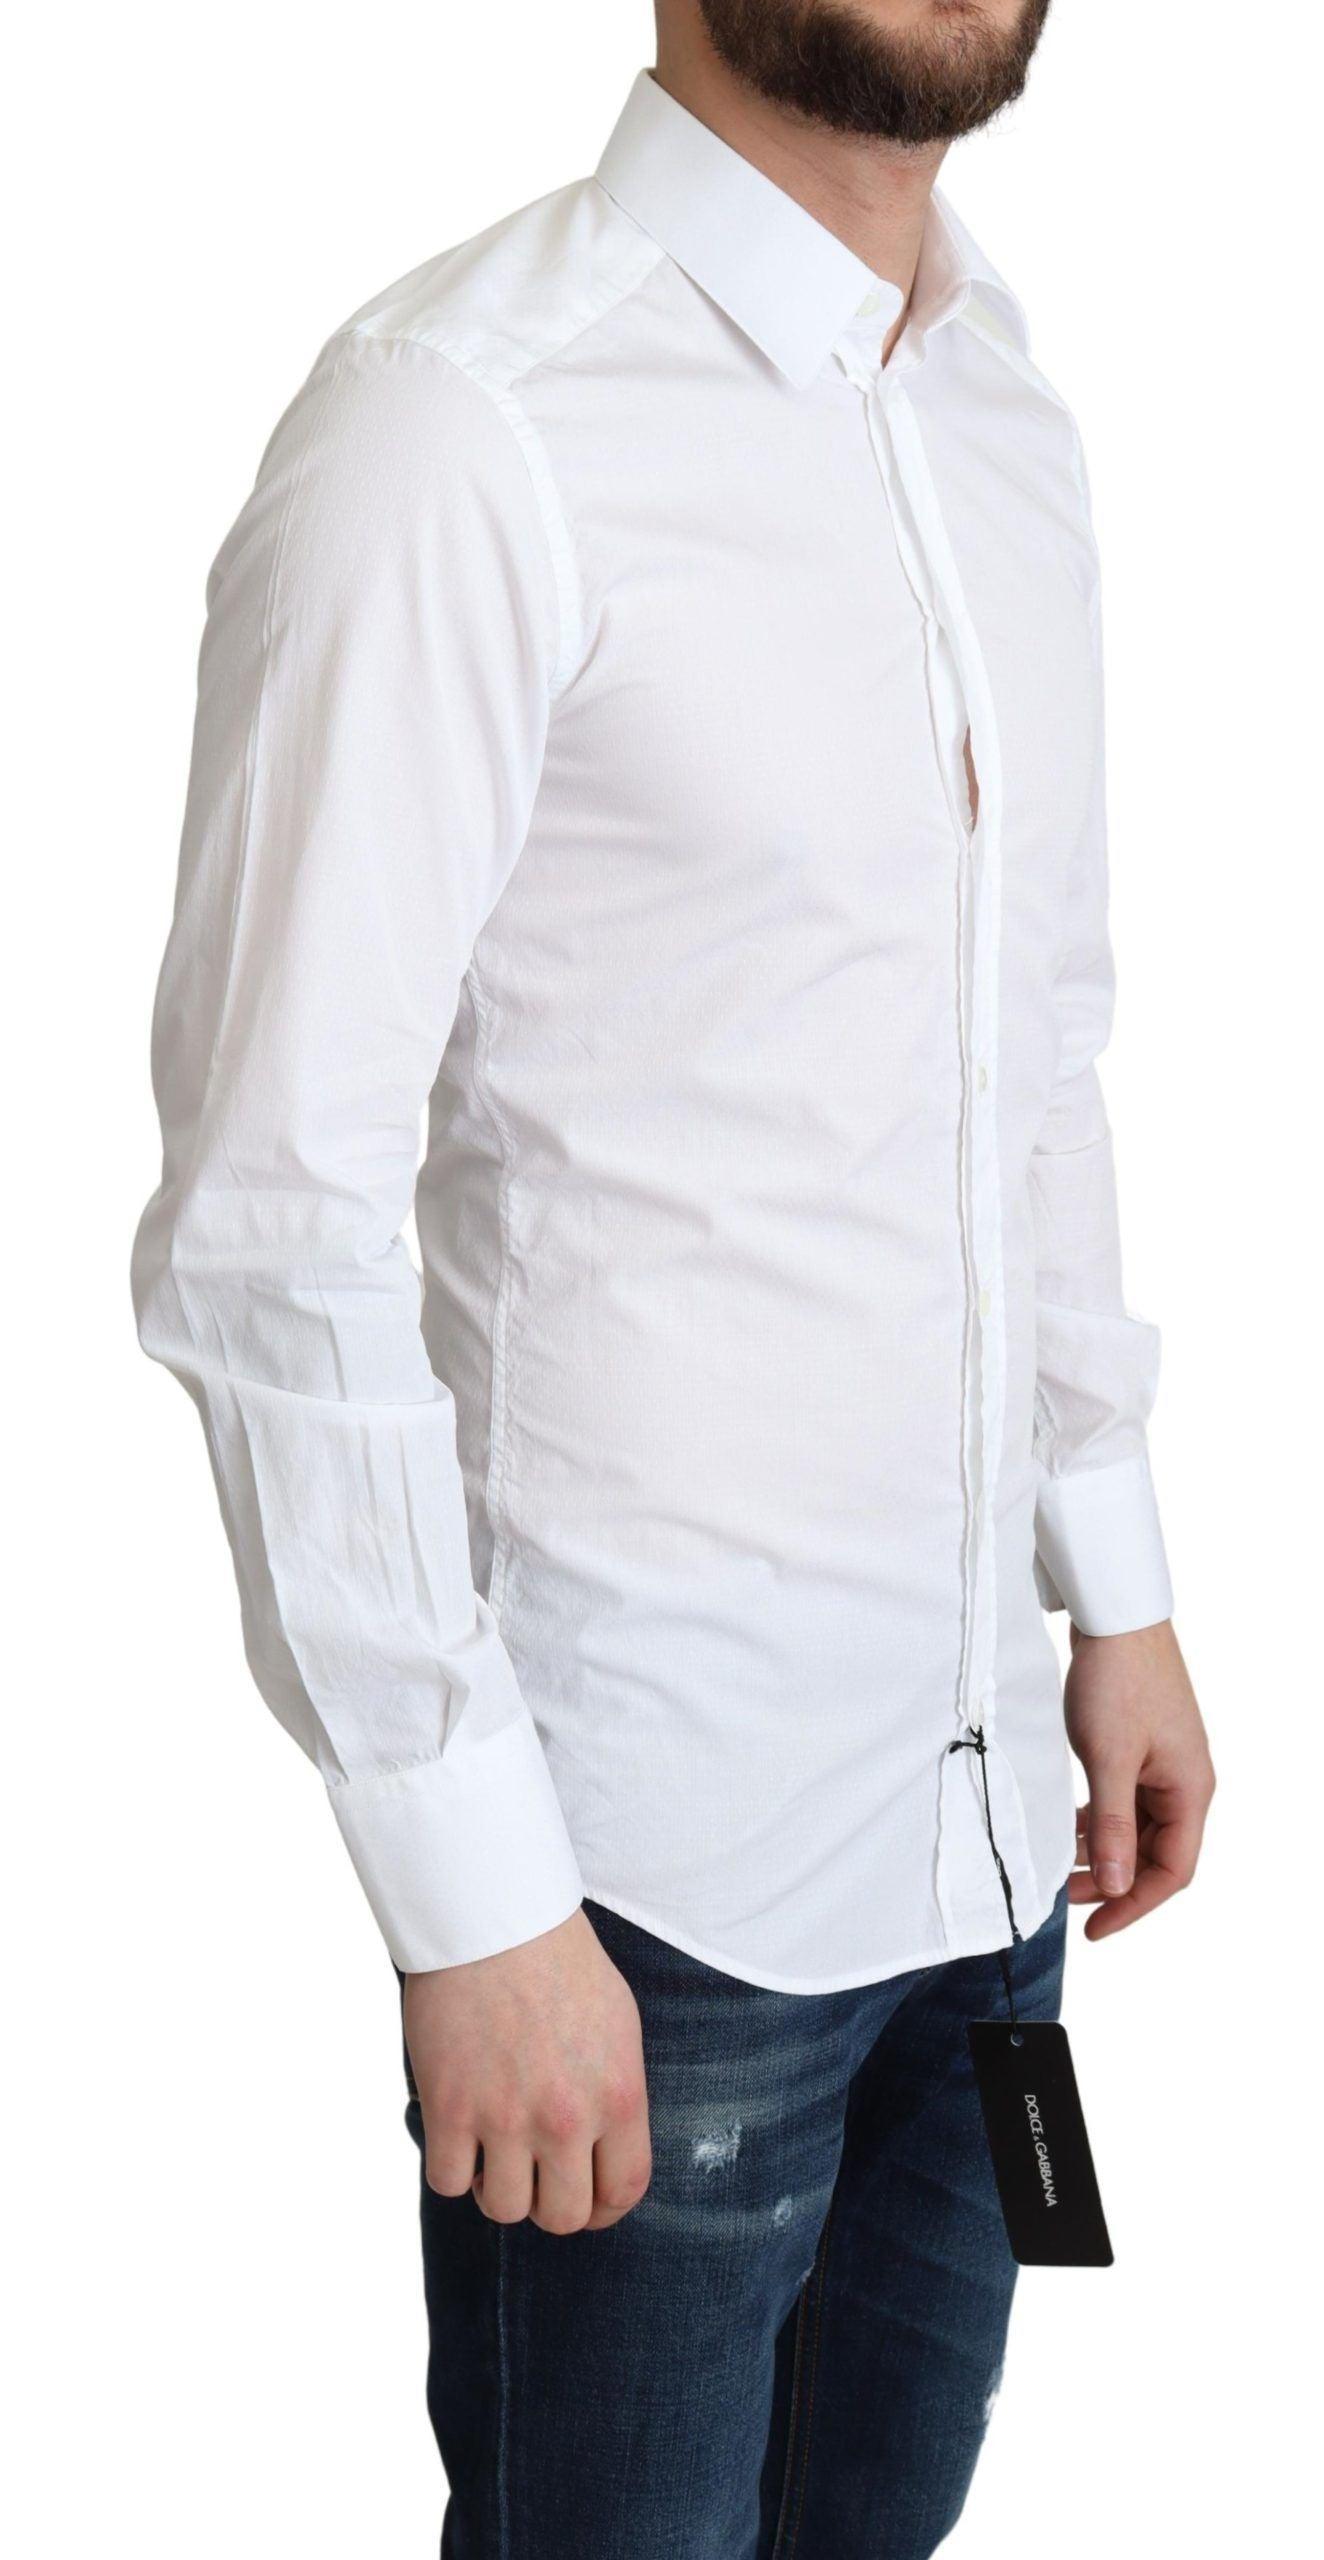 Dolce & Gabbana Elegant White Cotton Dress Shirt - PER.FASHION